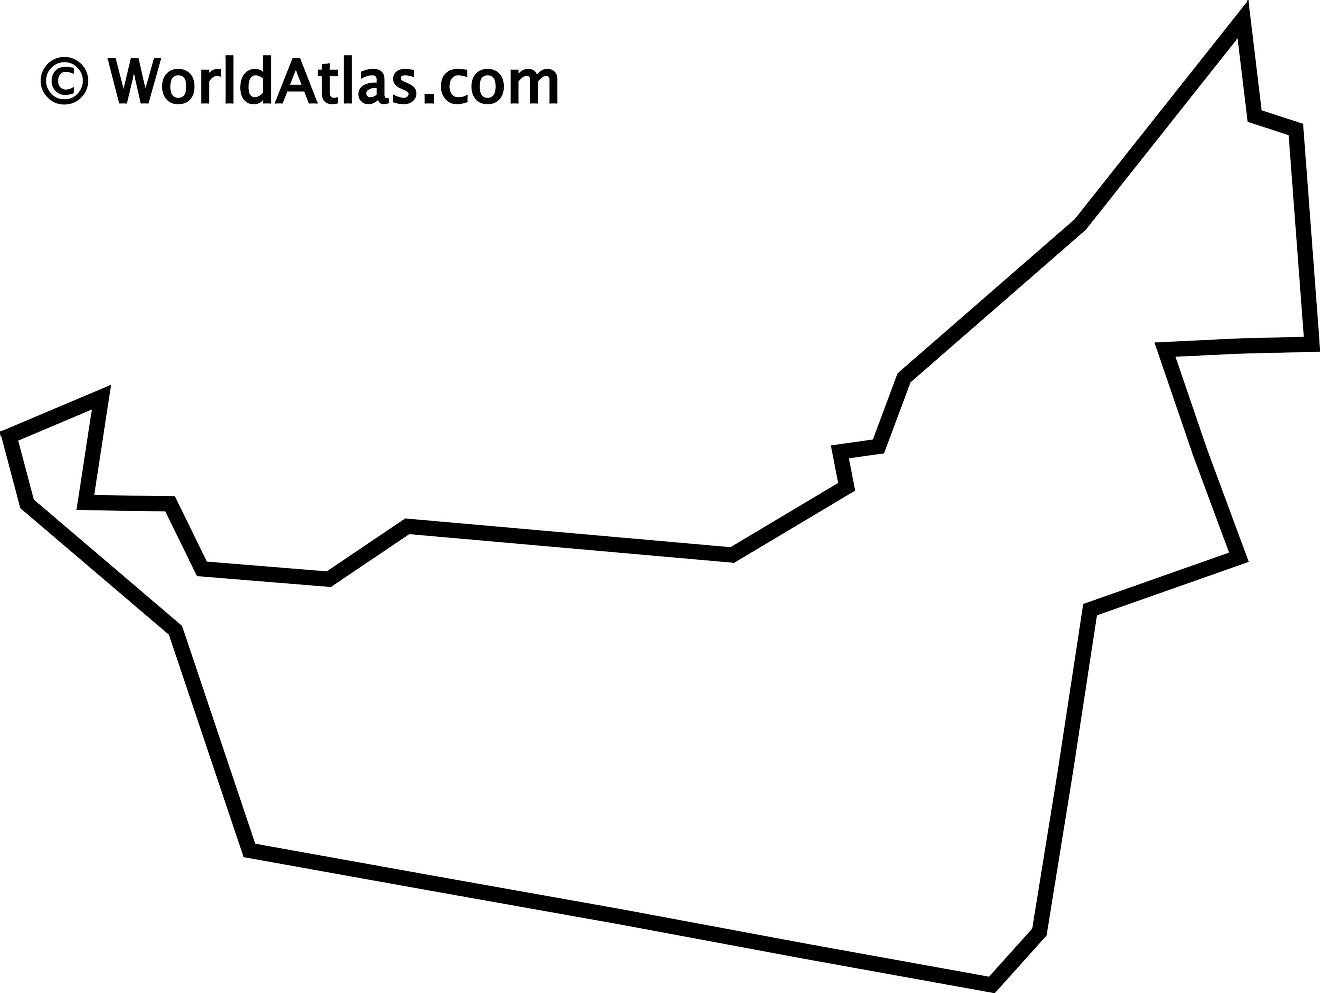 Mapa de contorno en blanco de los Emiratos Árabes Unidos (EAU)